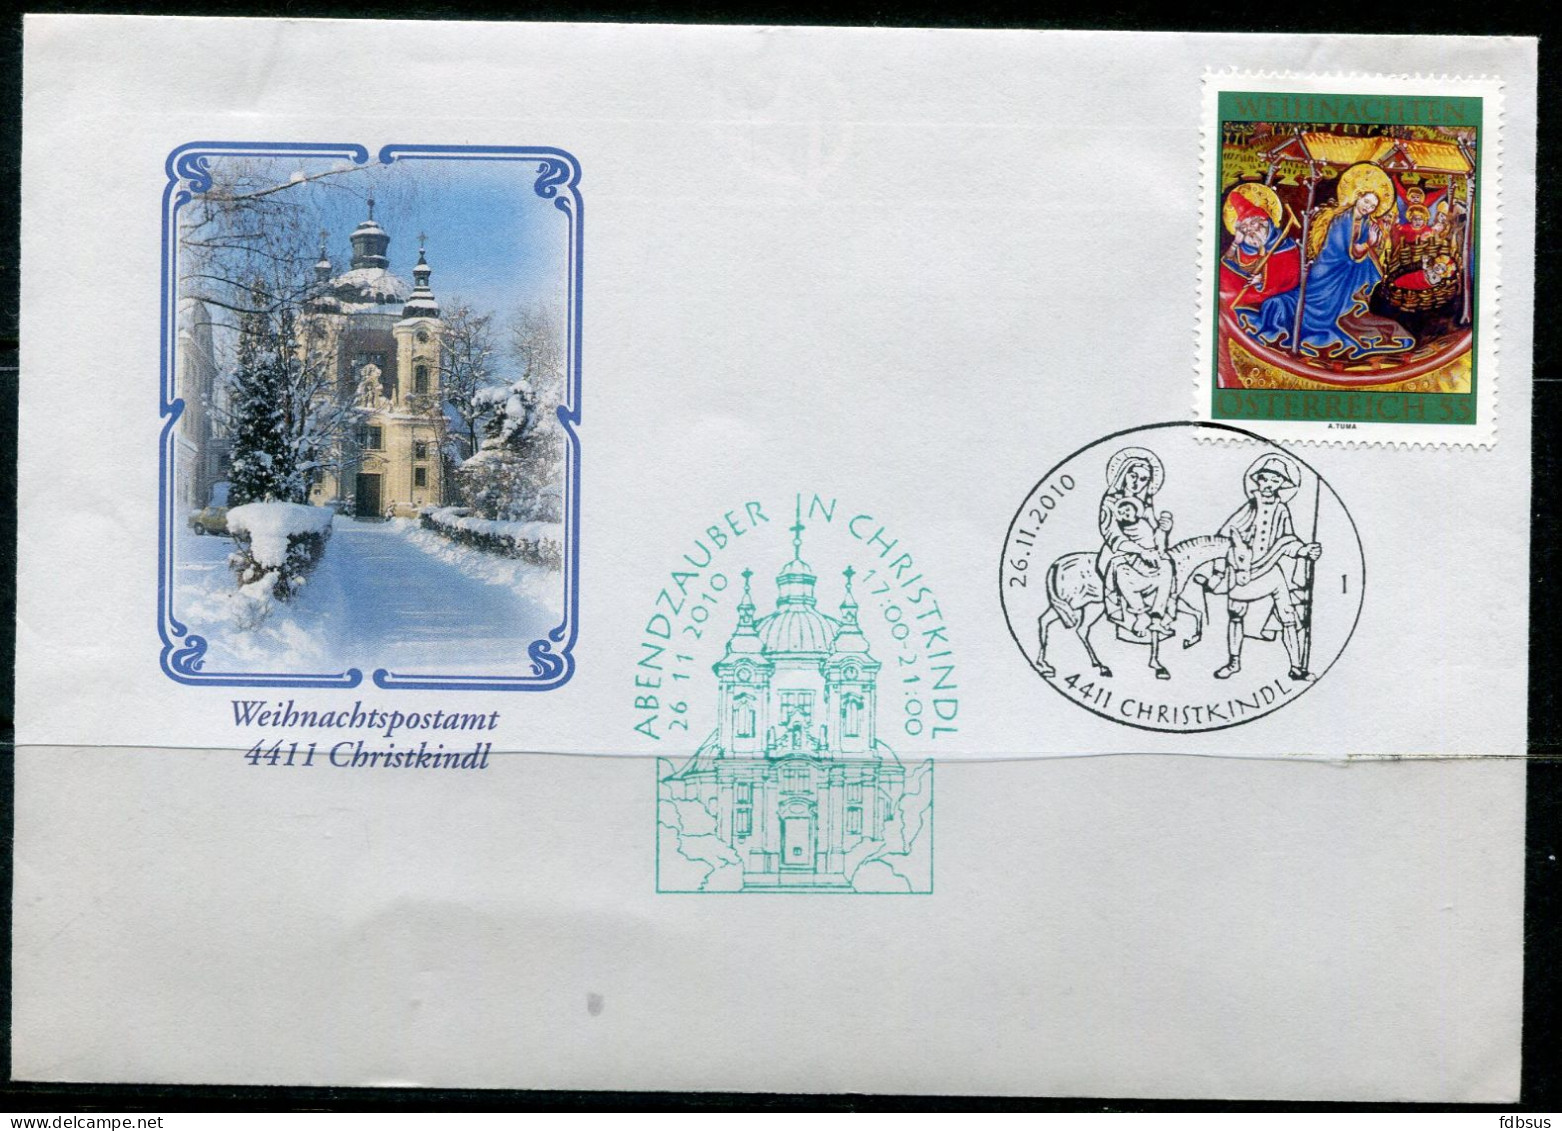 26-11-2010 Christkindl Cover Noel Christmas Navidad Weihnachten - See Sonderstempel And Briefmarken - - Brieven En Documenten